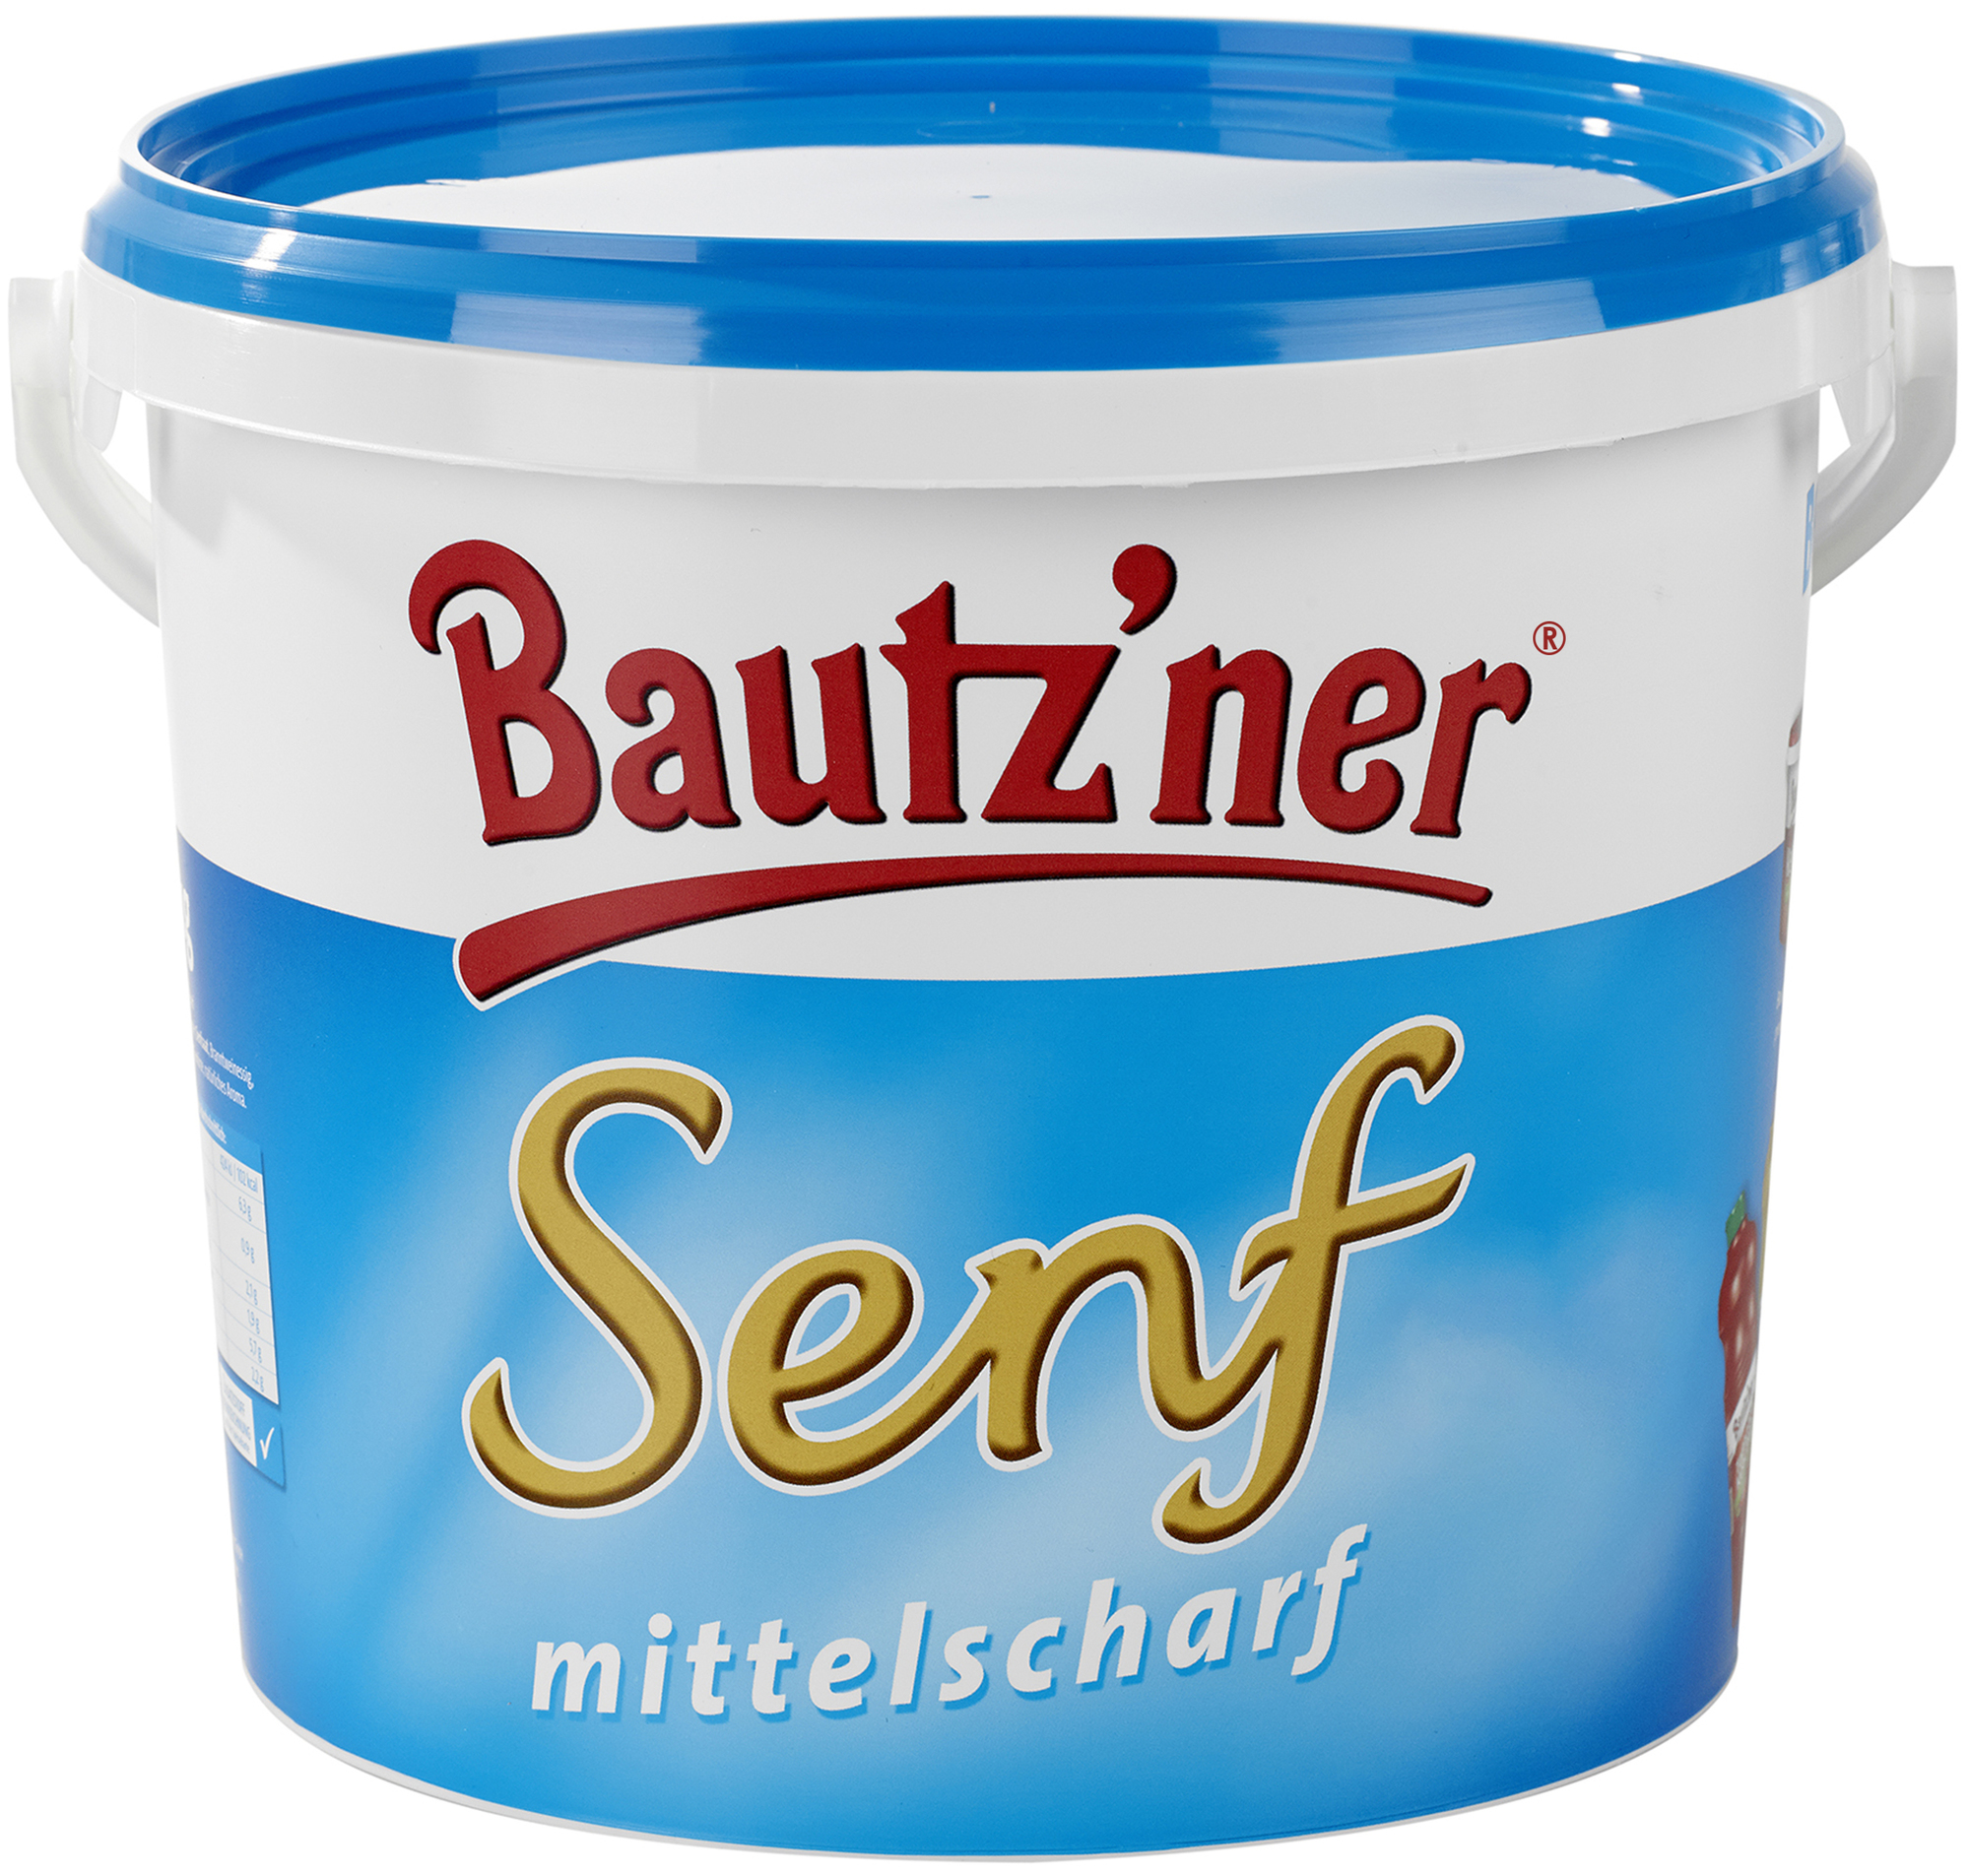 Bautzner Senf mittelscharf 5000 g